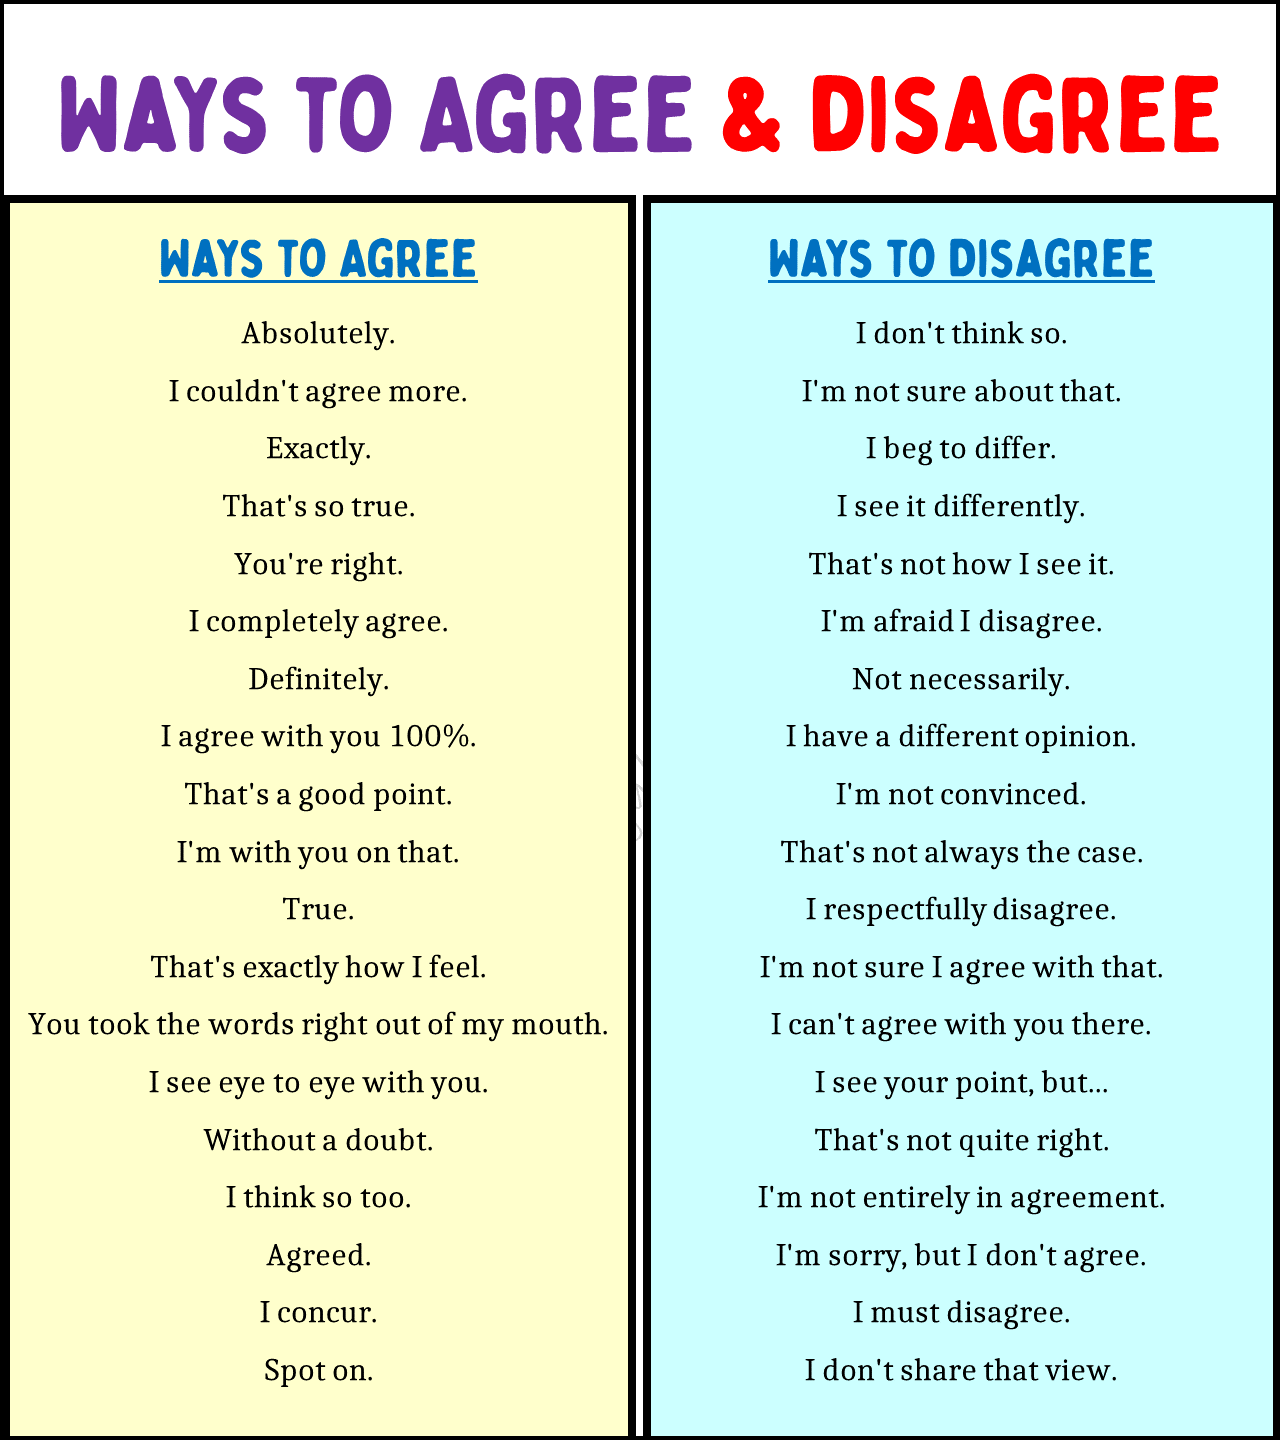 Ways to Agree & disagree 2